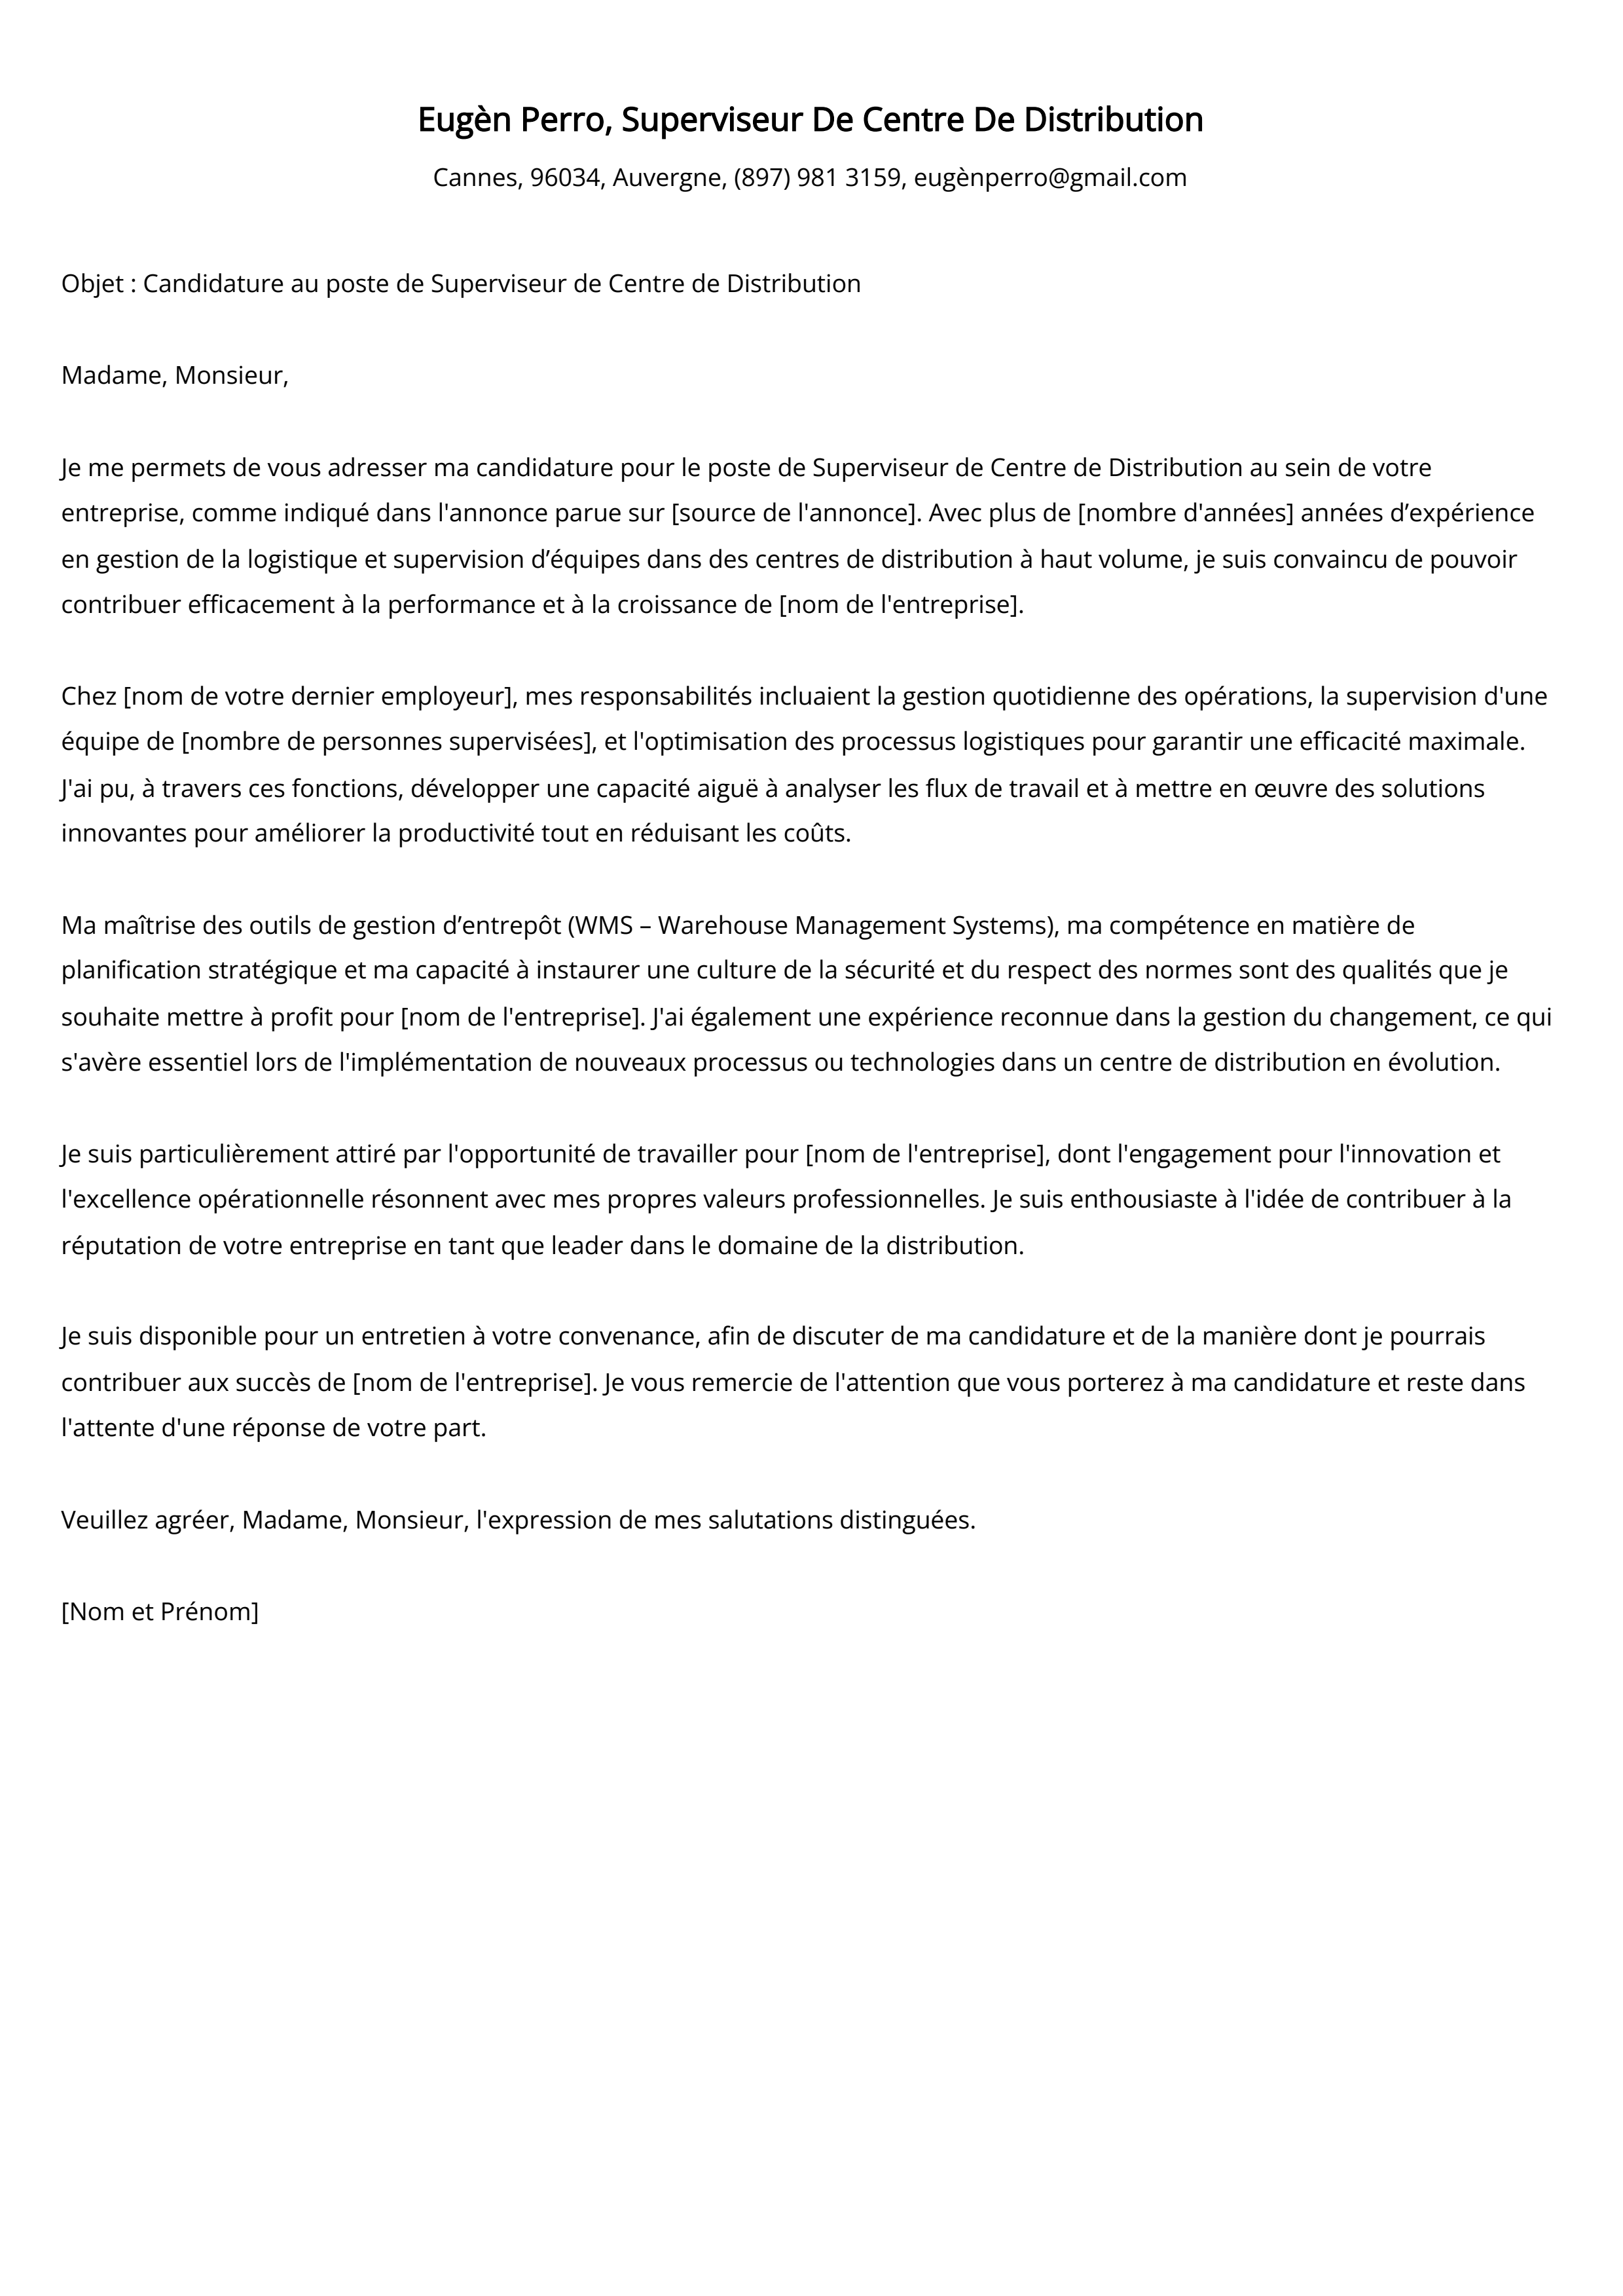 Superviseur De Centre De Distribution Cover Letter Example